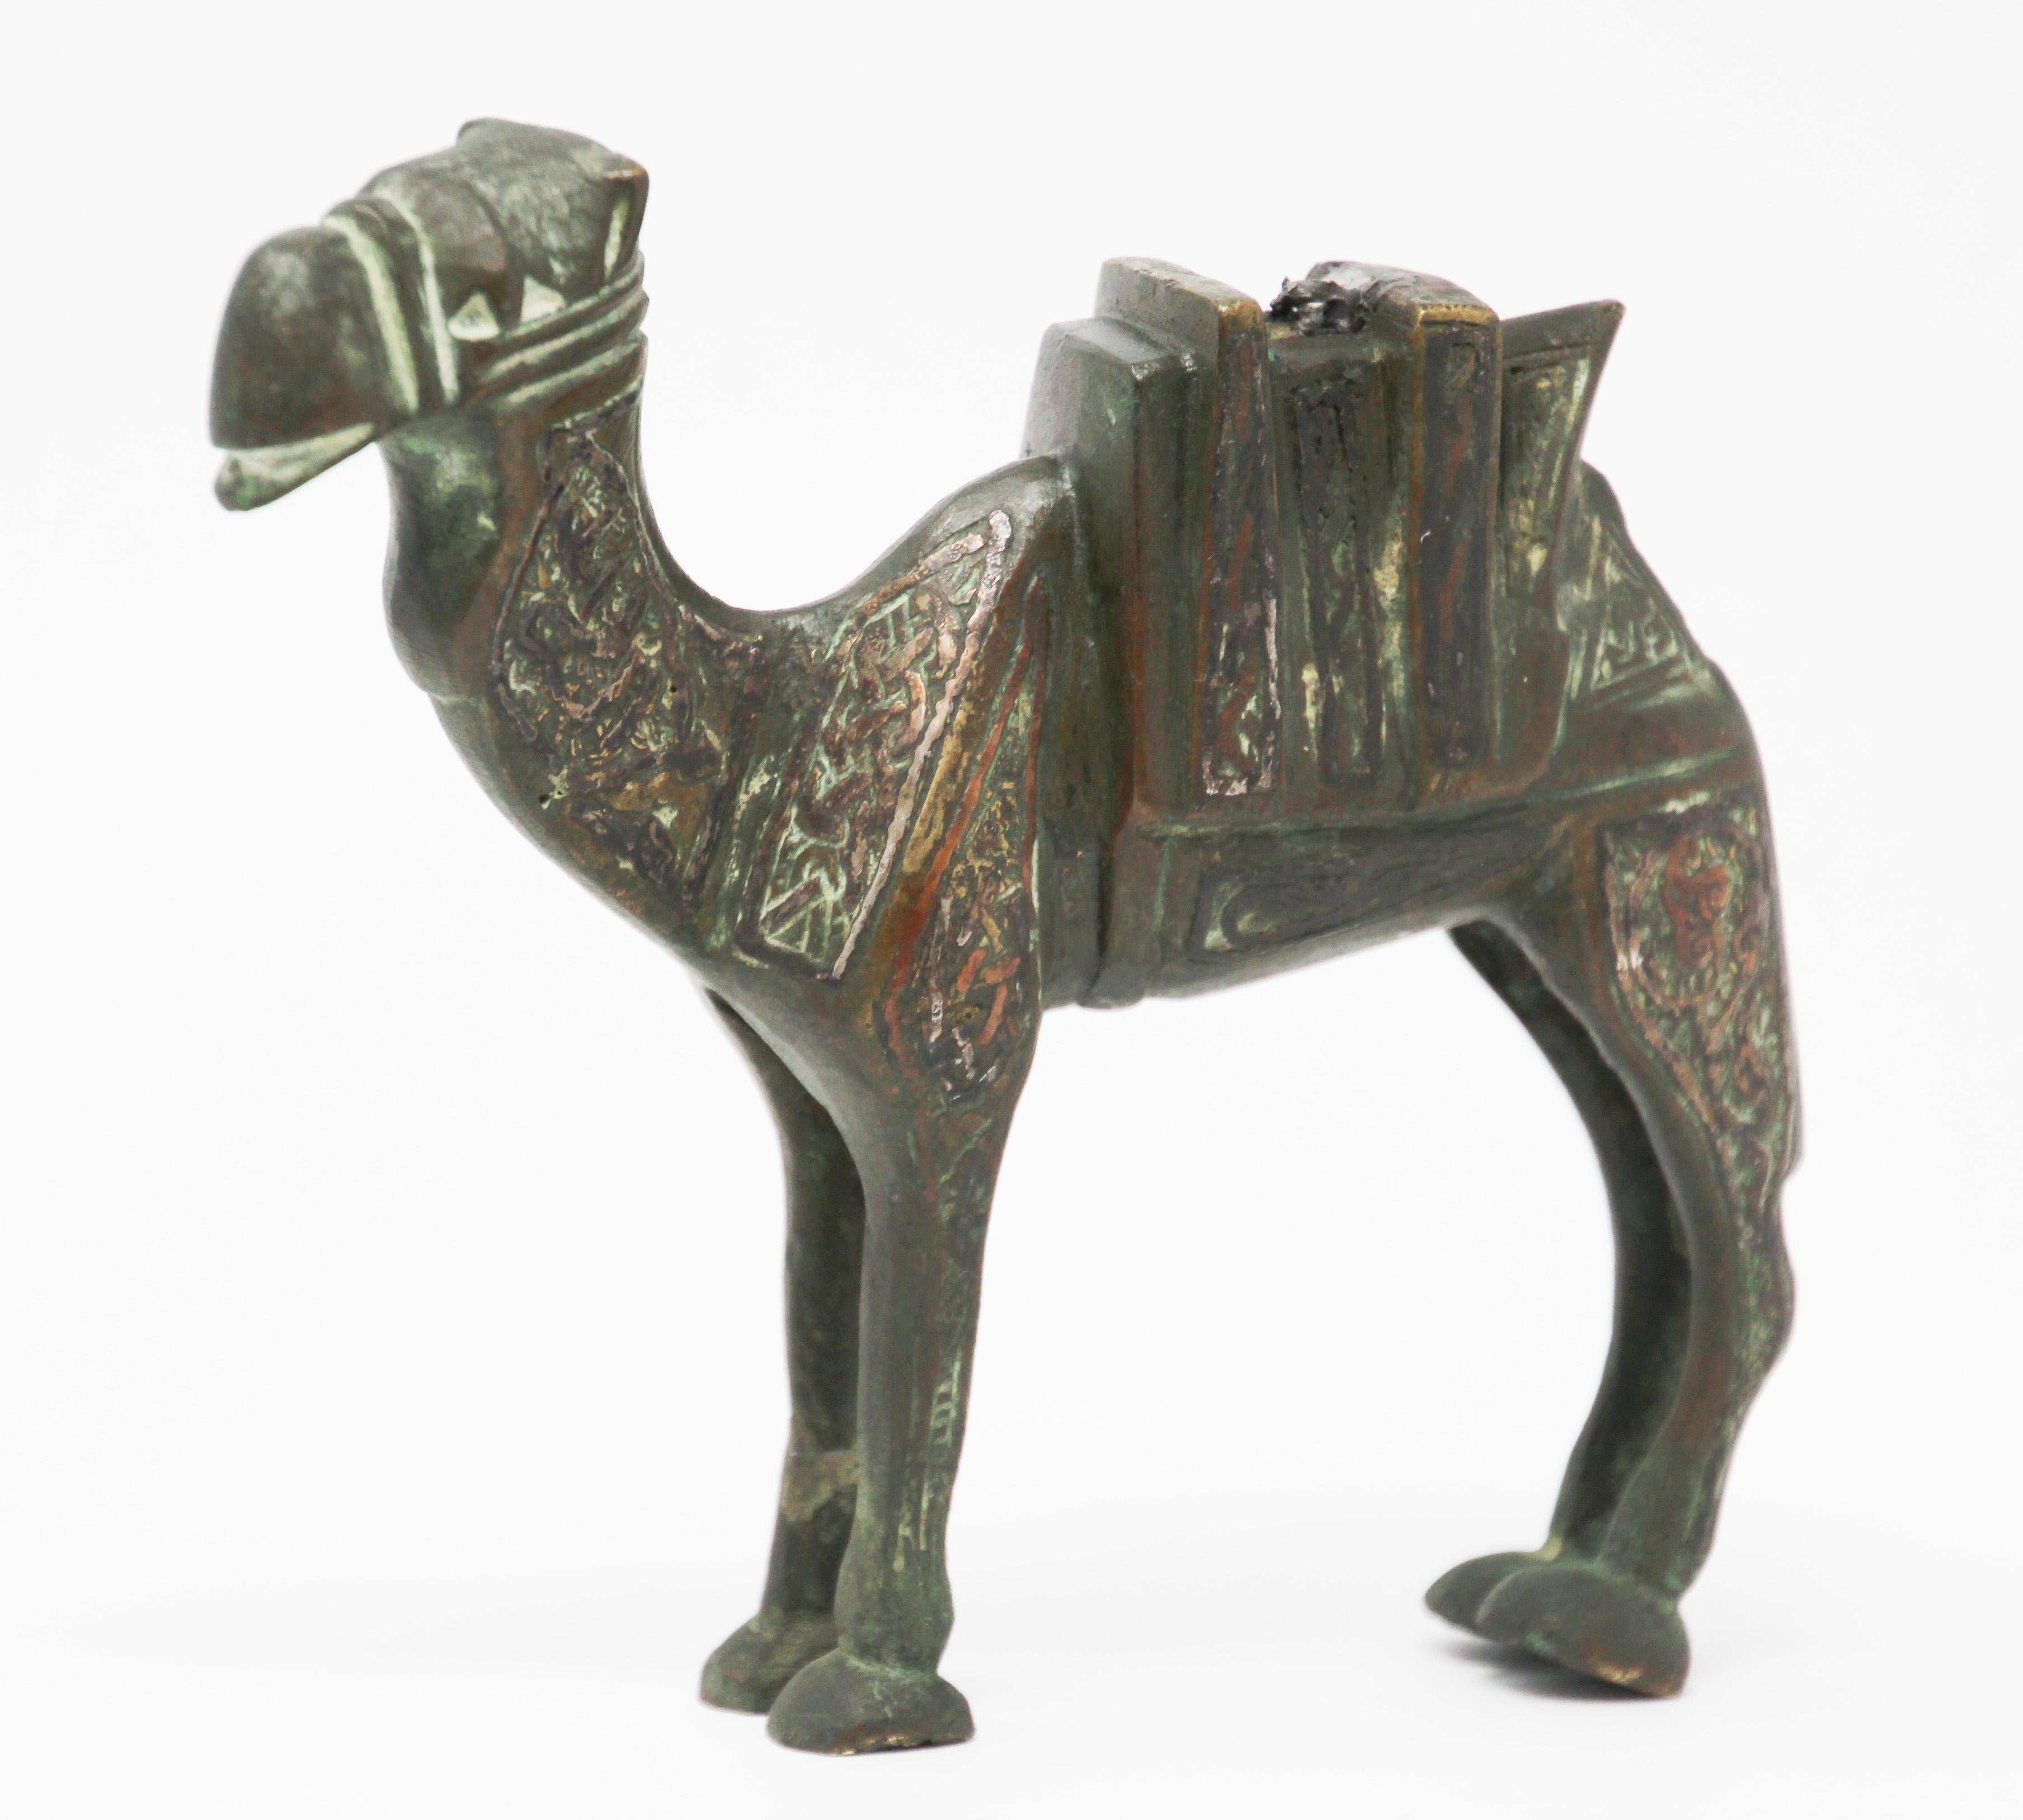 Dies ist eine antike Metallguss Messing mit Kupfer Dekoration Skulptur eines Kamels, ca. 1920 überlagert.
Handgefertigte Skulptur aus Messing im Stil der Mamelukenrevolution, islamisches Metallkunstwerk mit Intarsien.
Sehr dekorativ, ungewöhnlich